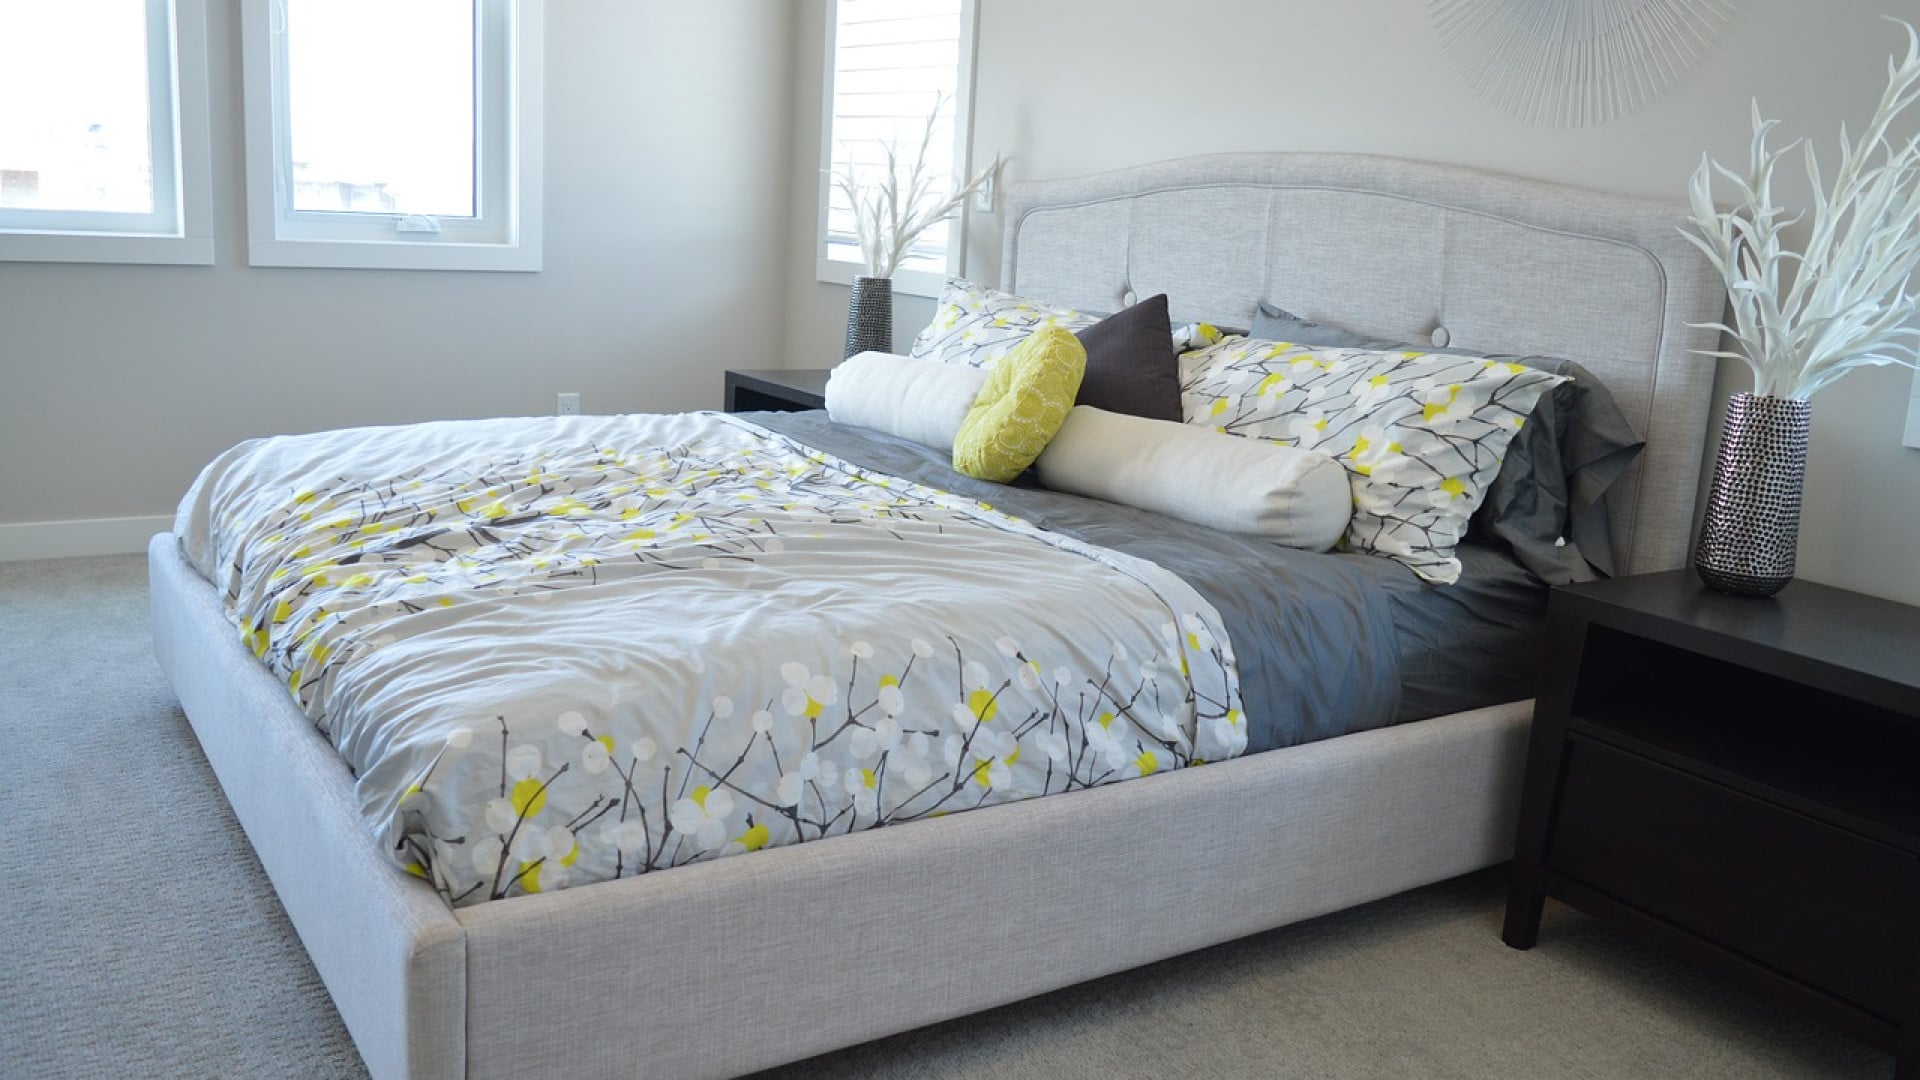 Chambre moderne avec un lit soigneusement fait comprenant un ensemble de literie gris et jaune et des oreillers décoratifs, flanqué d'une table de nuit et d'un vase décoratif.